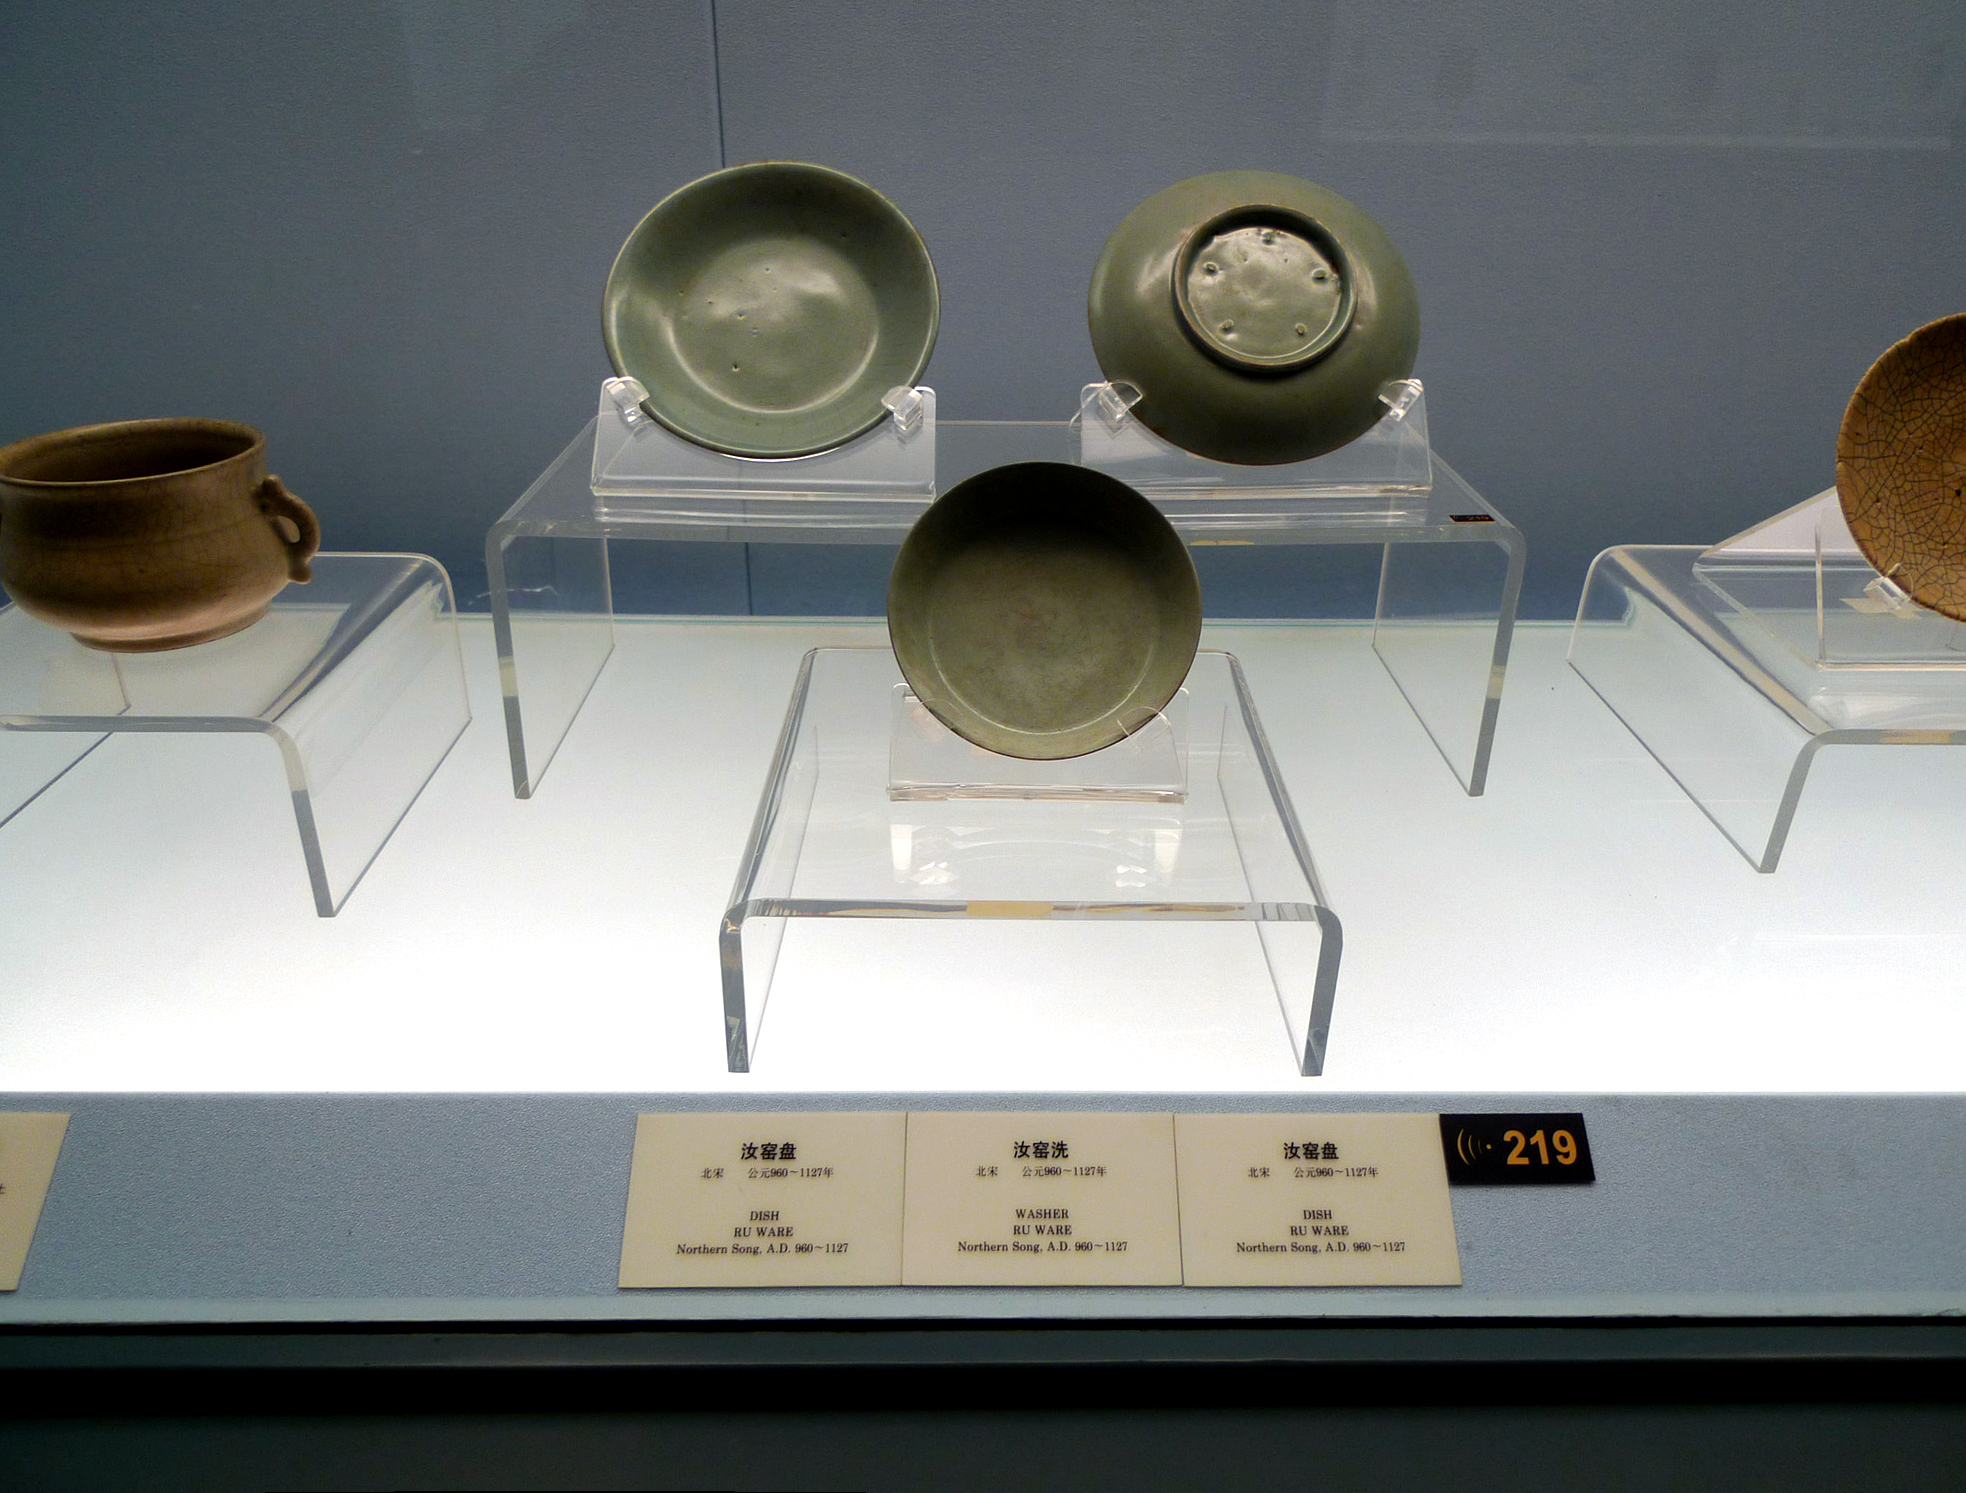 File:上海博物馆藏汝窑青瓷.JPG - Wikipedia